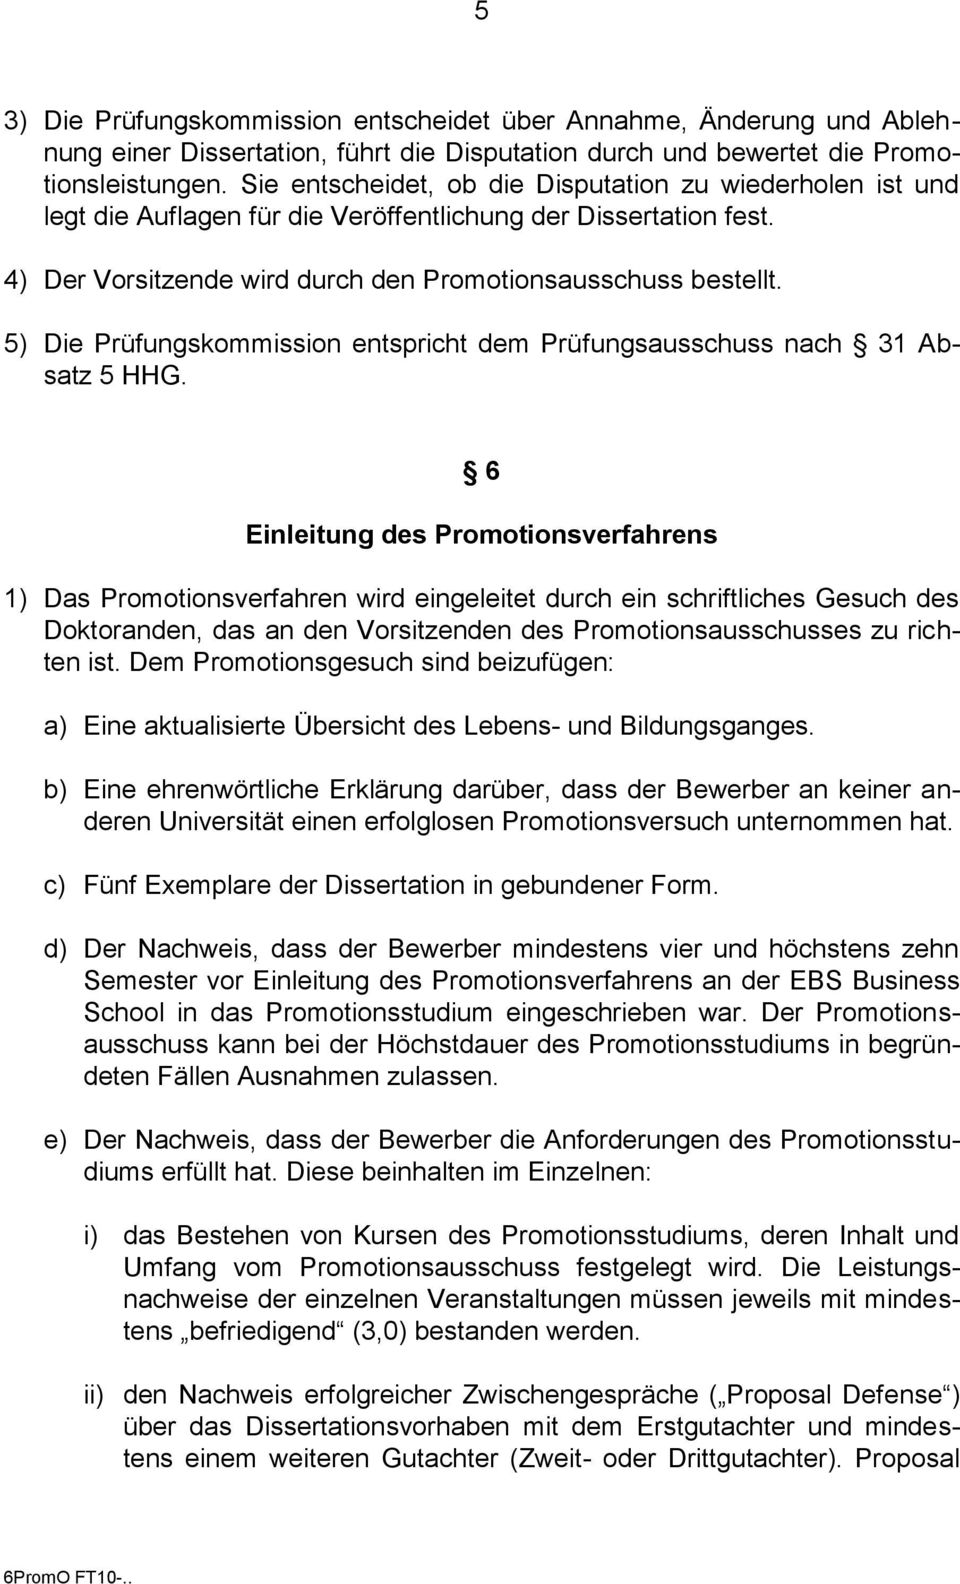 5) Die Prüfungskommission entspricht dem Prüfungsausschuss nach 31 Absatz 5 HHG.